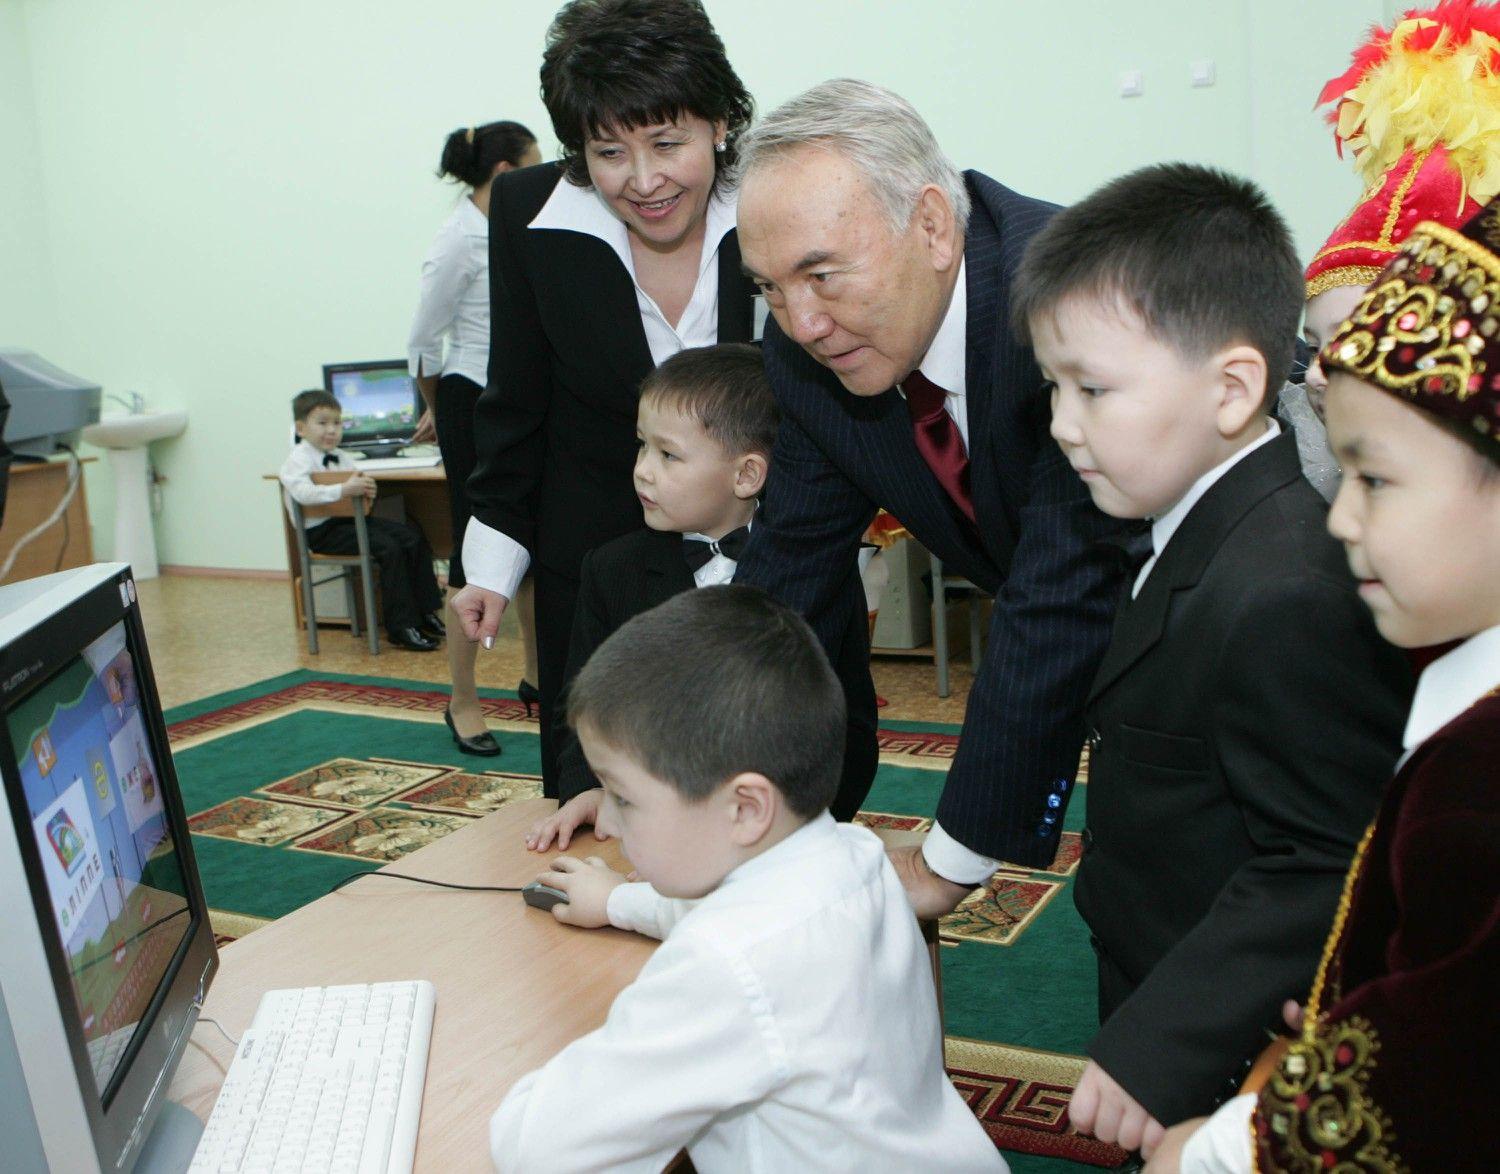 К чему приведет латинизация Казахстана? Опыт прогноза